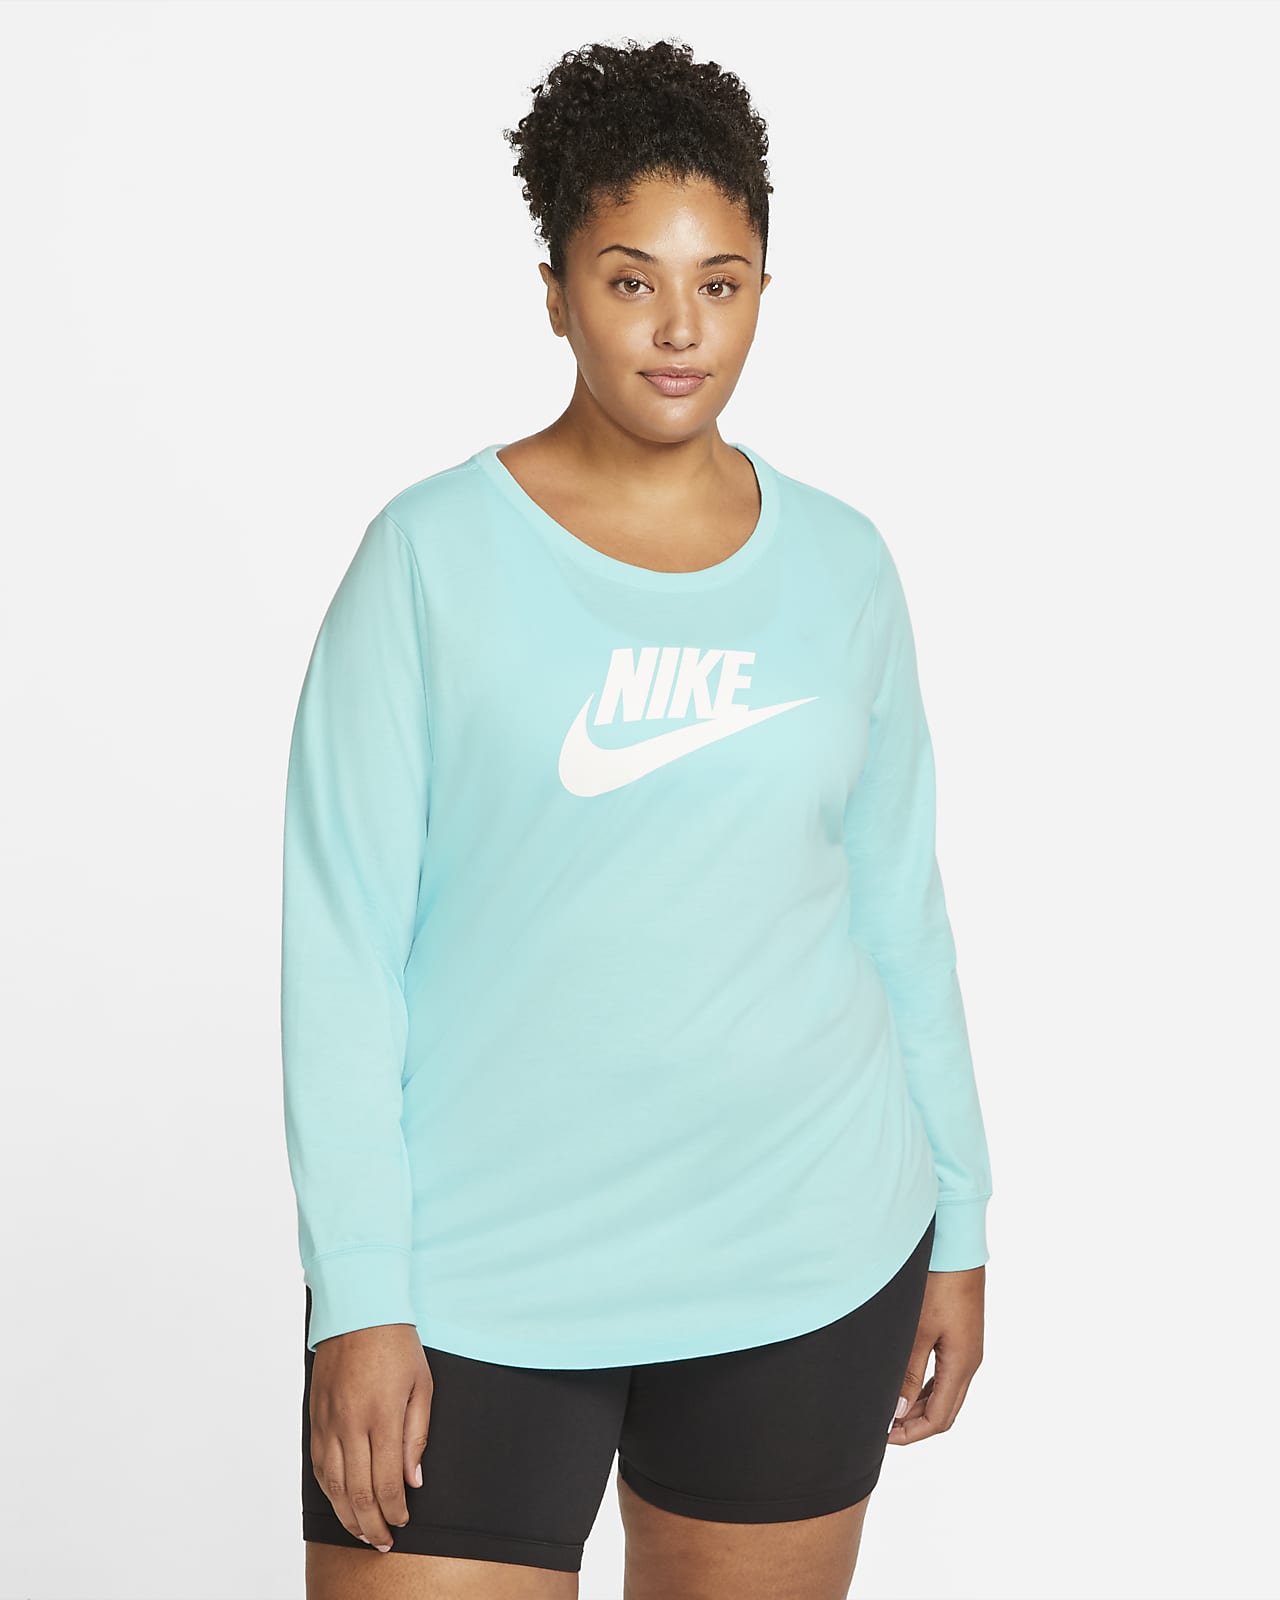 Nike Sportswear Essential Women's T-Shirt (Plus Size)